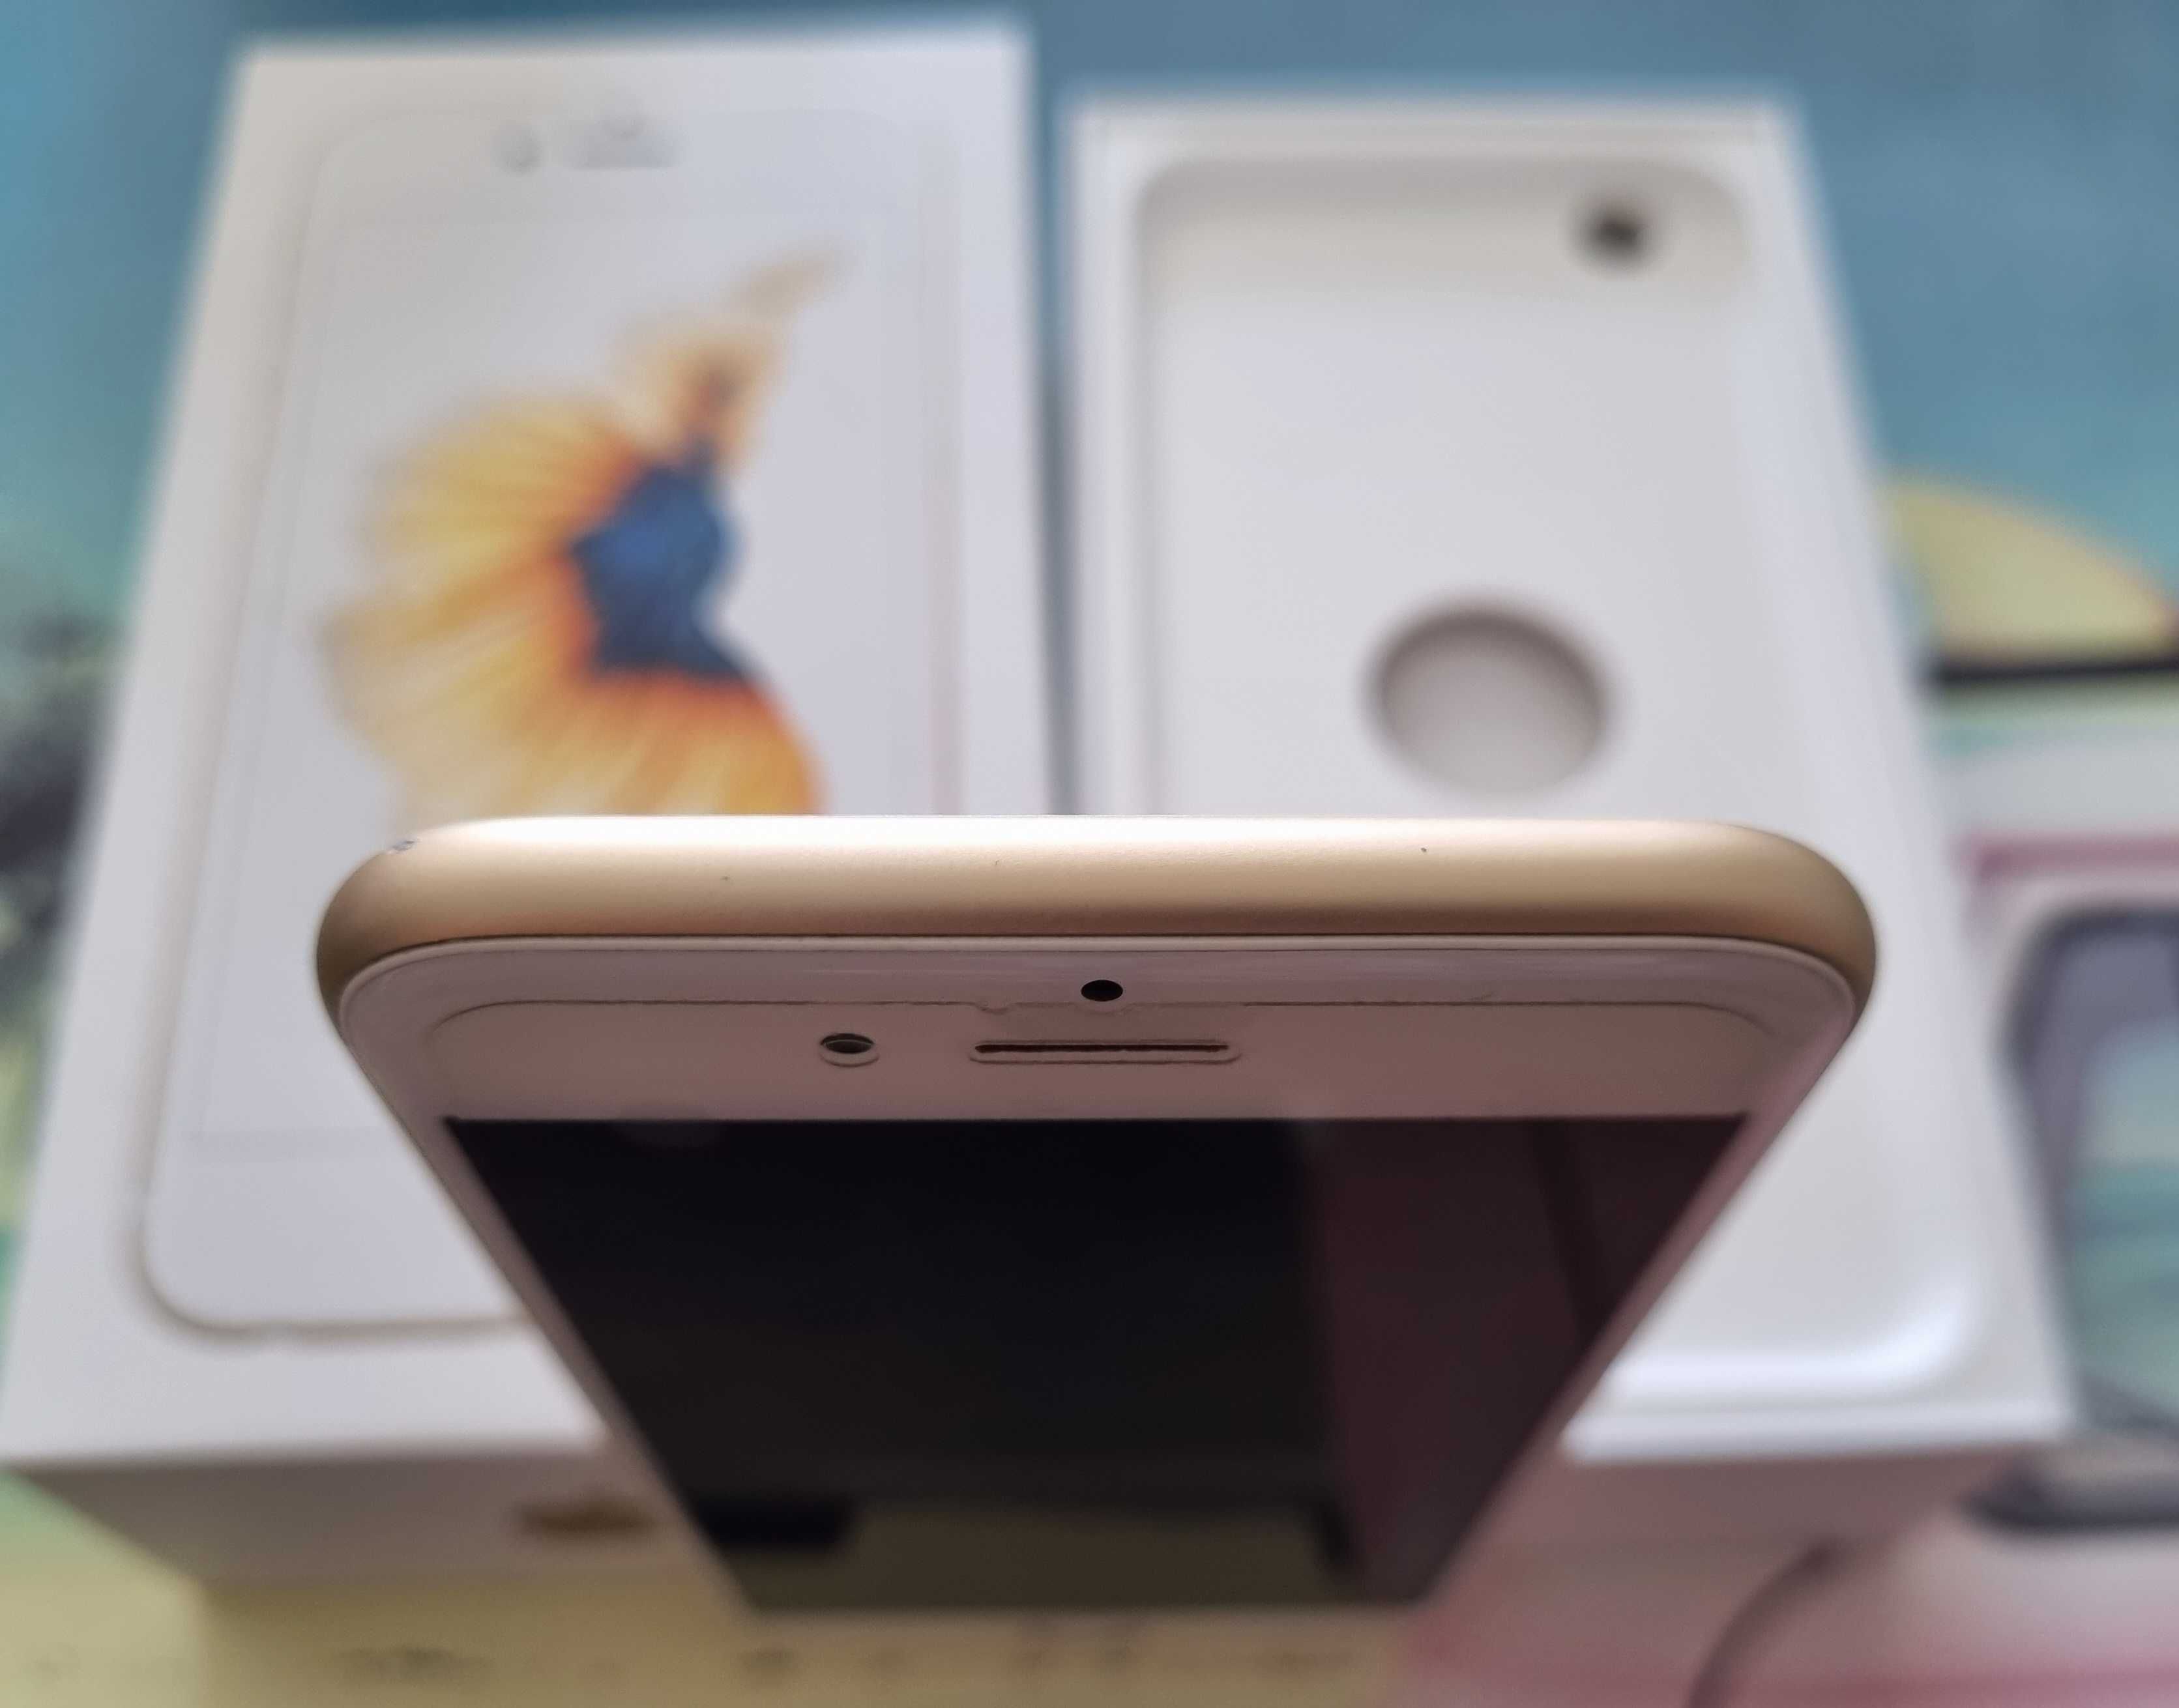 Piekny Apple iPhone 6s bialy zloty okazja 100% sprawny zamIana